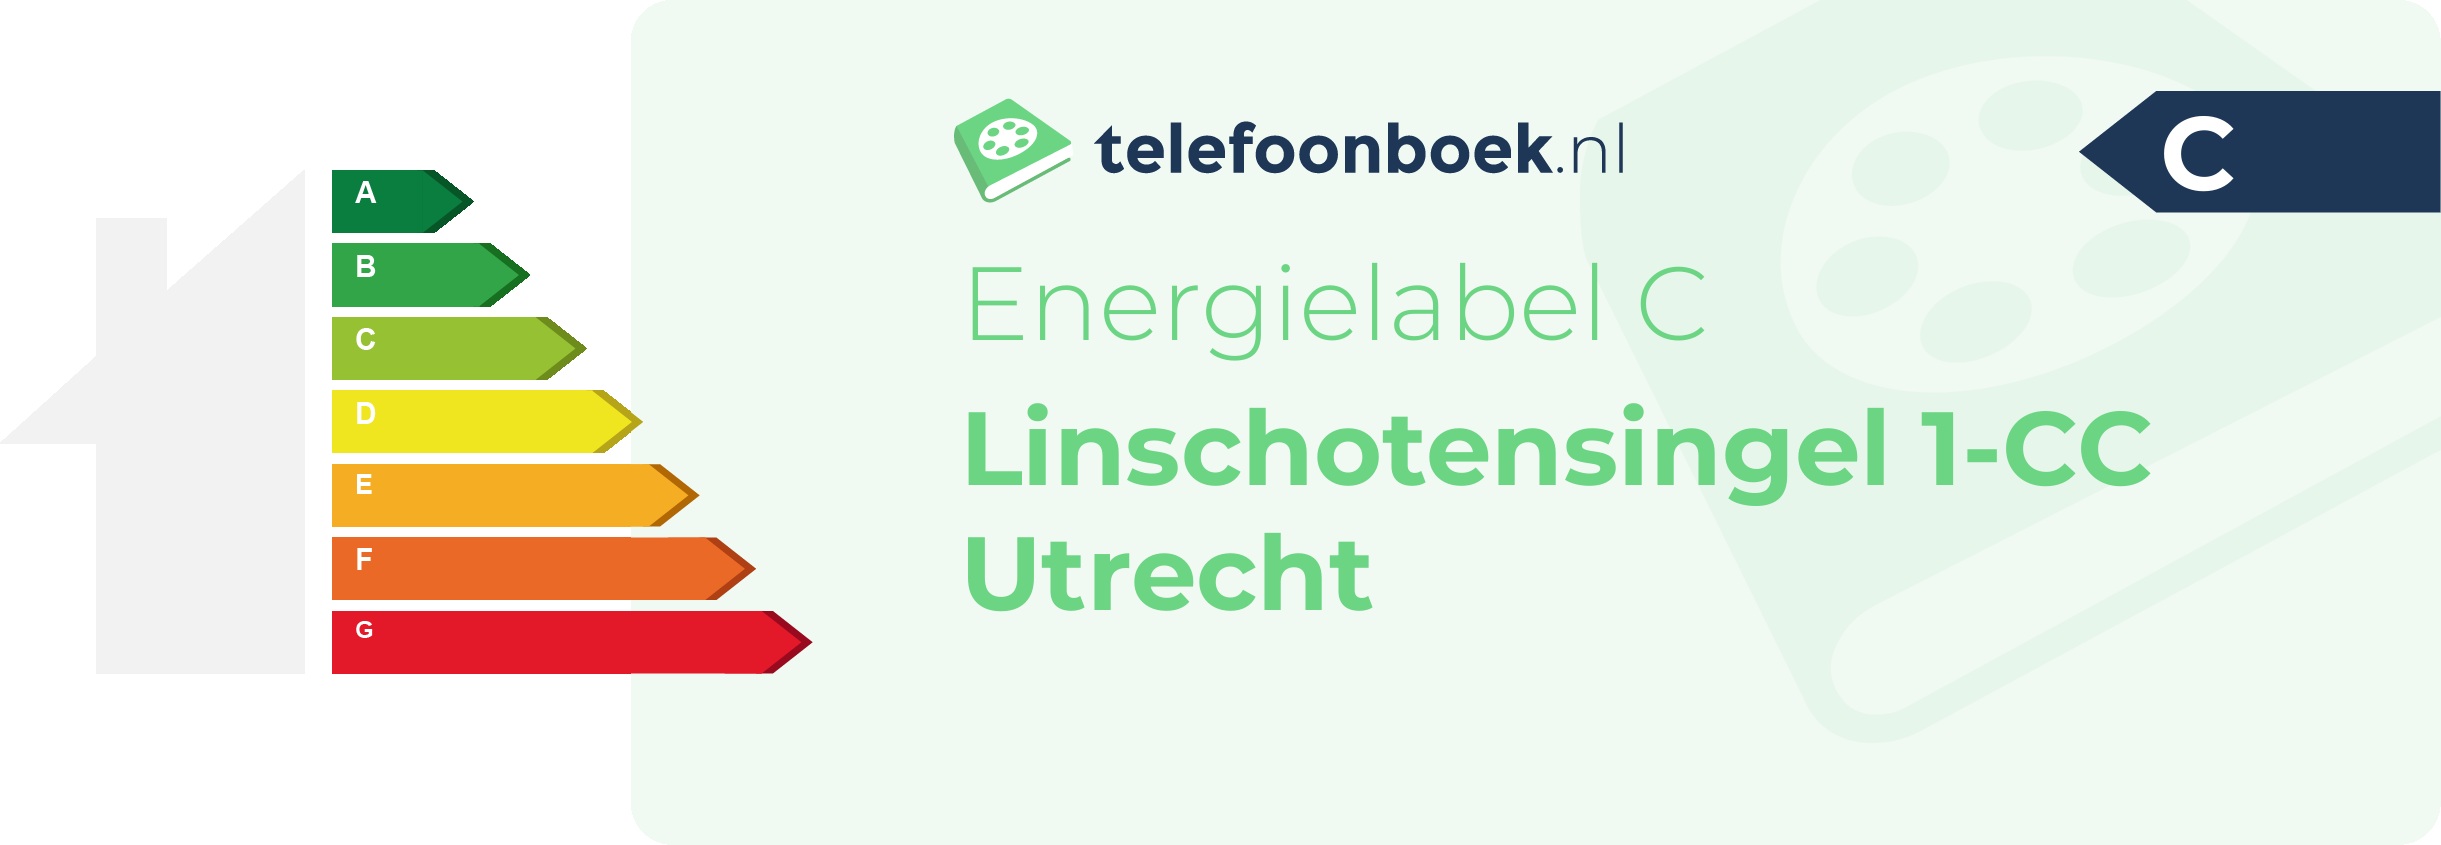 Energielabel Linschotensingel 1-CC Utrecht